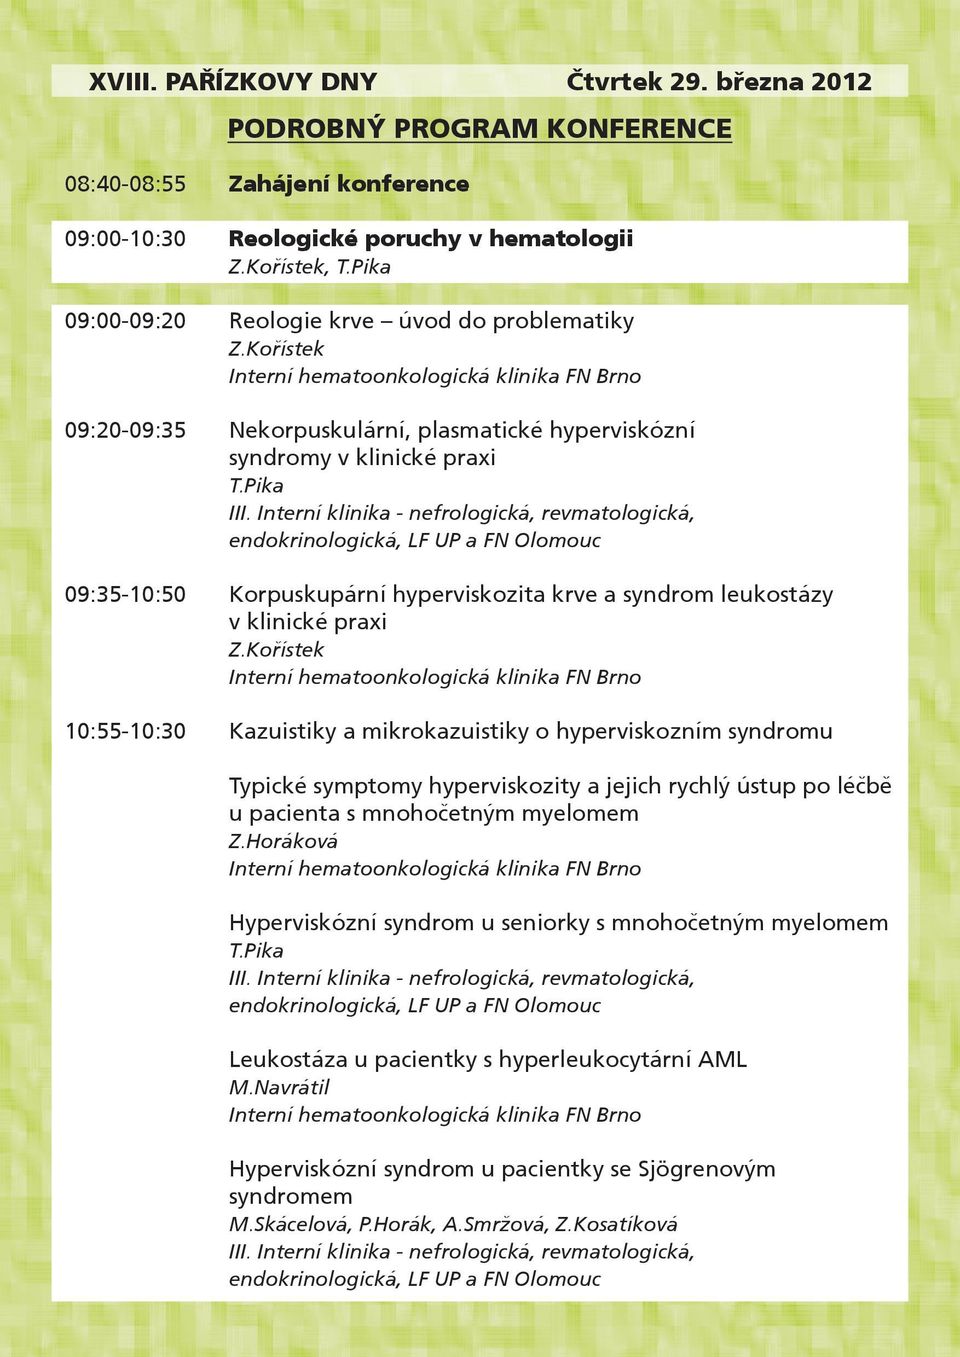 Kořístek, T.Pika Z.Kořístek Interní hematoonkologická klinika FN Brno Nekorpuskulární, plasmatické hyperviskózní syndromy v klinické praxi T.Pika III.